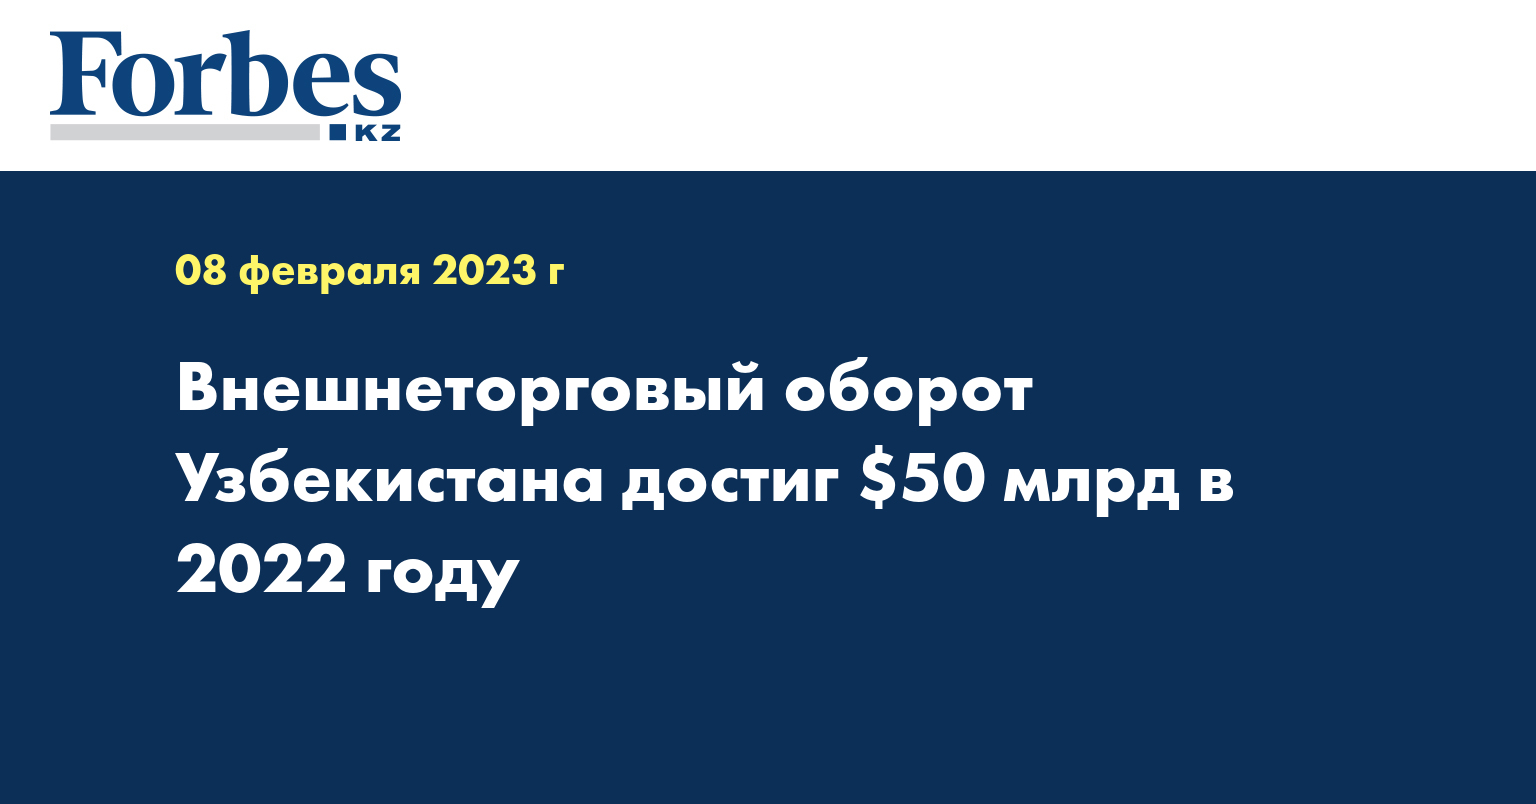 Внешнеторговый оборот Узбекистана достиг $50 млрд в 2022 году